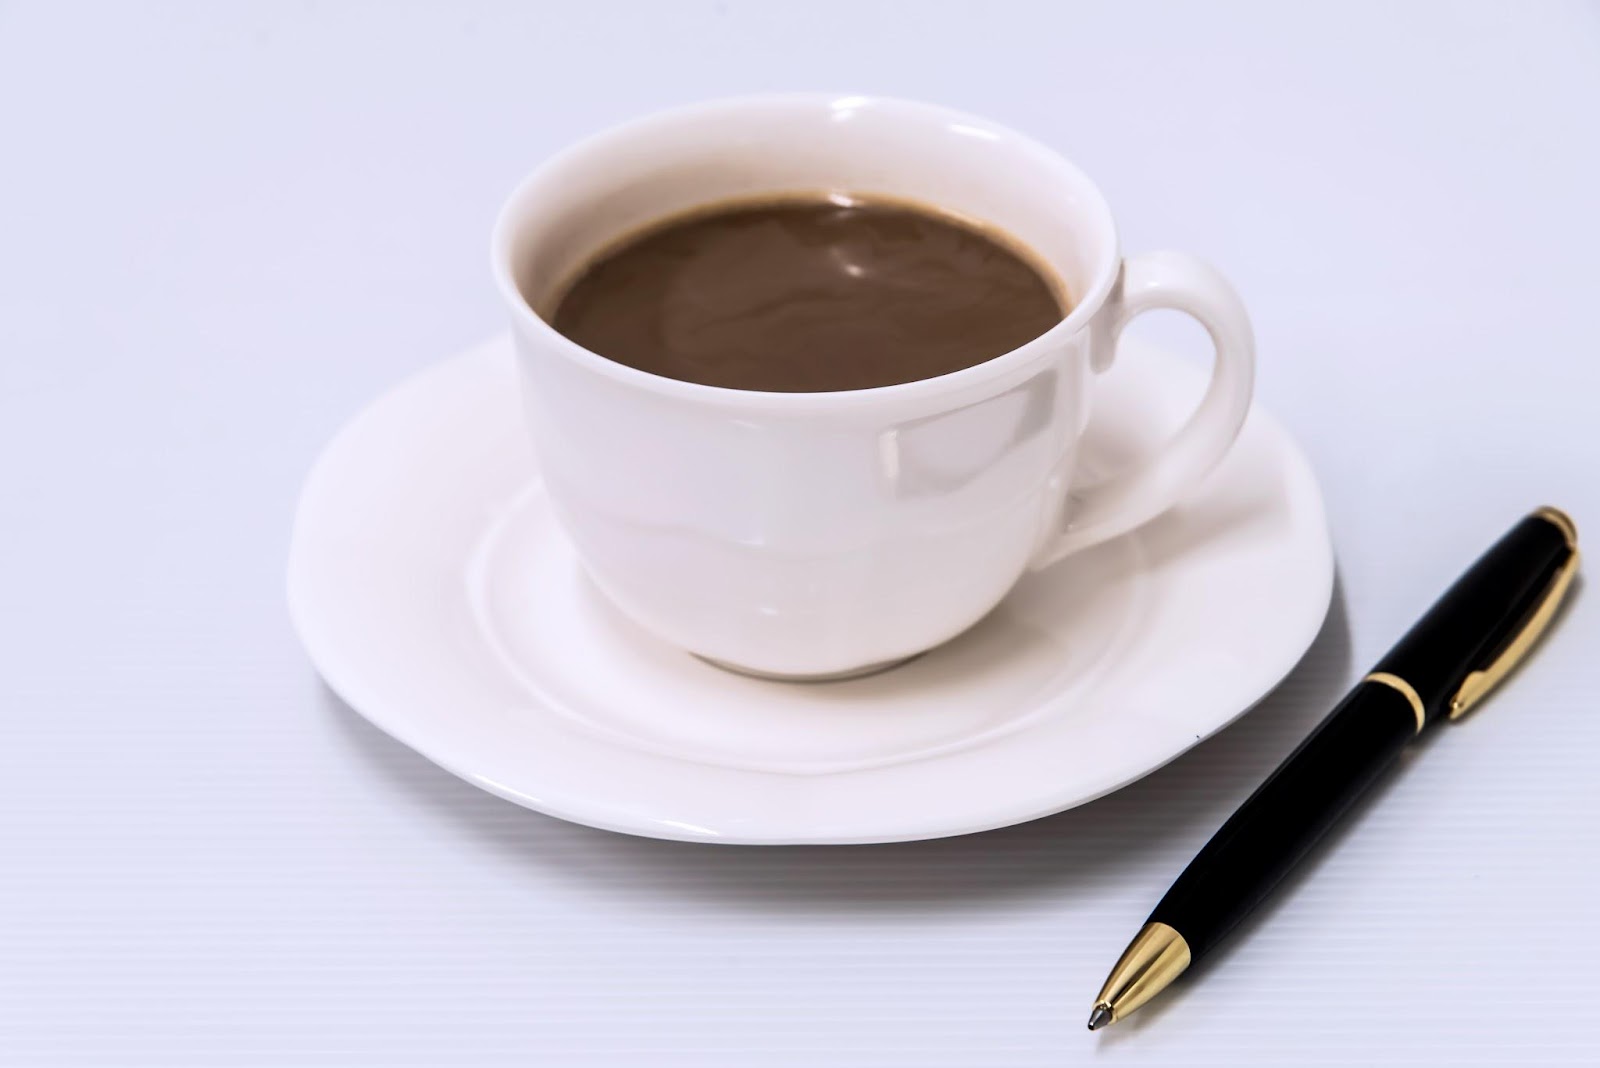 ボールペンが右側においてある、白いカップに入ったコーヒーの画像です。